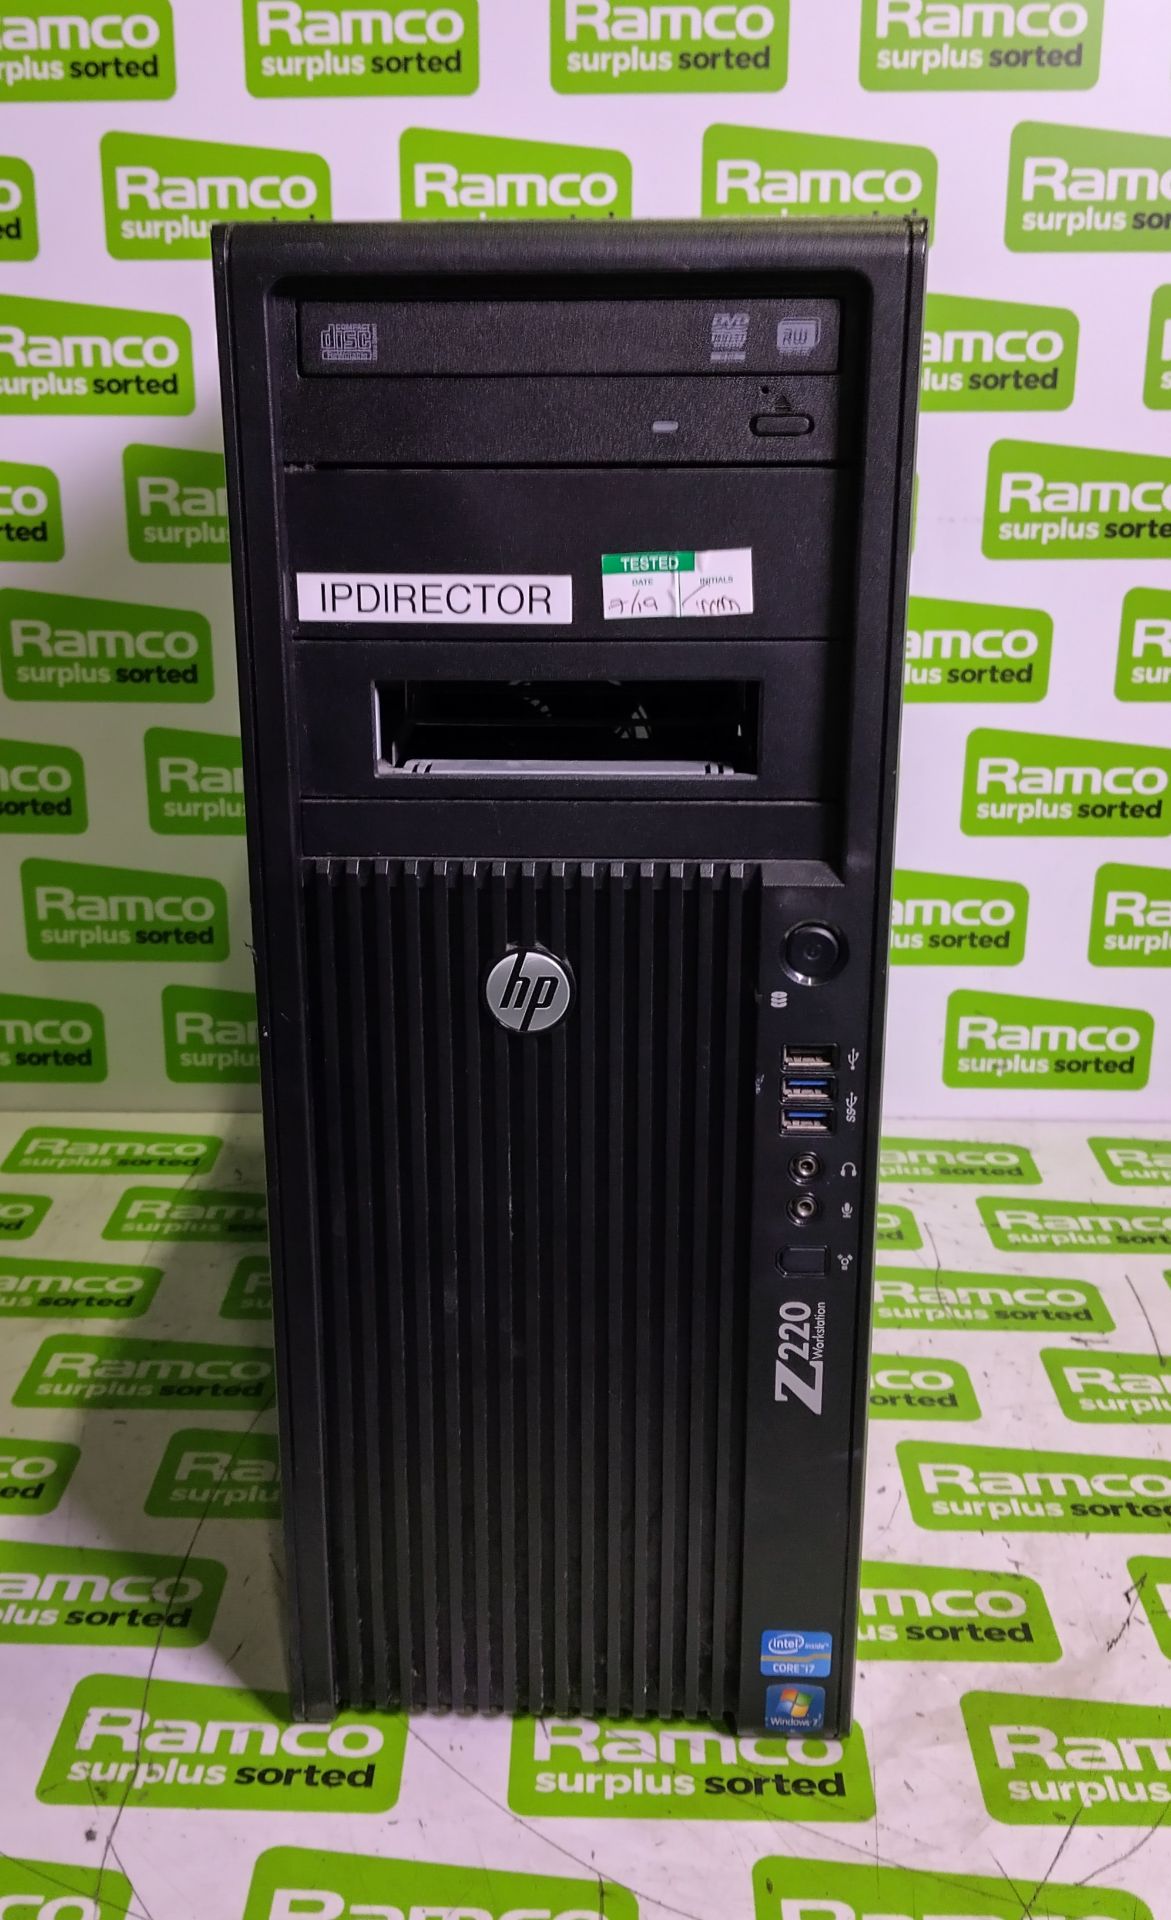 HP Z220 CMT workstation desktop tower PC - missing hard drive